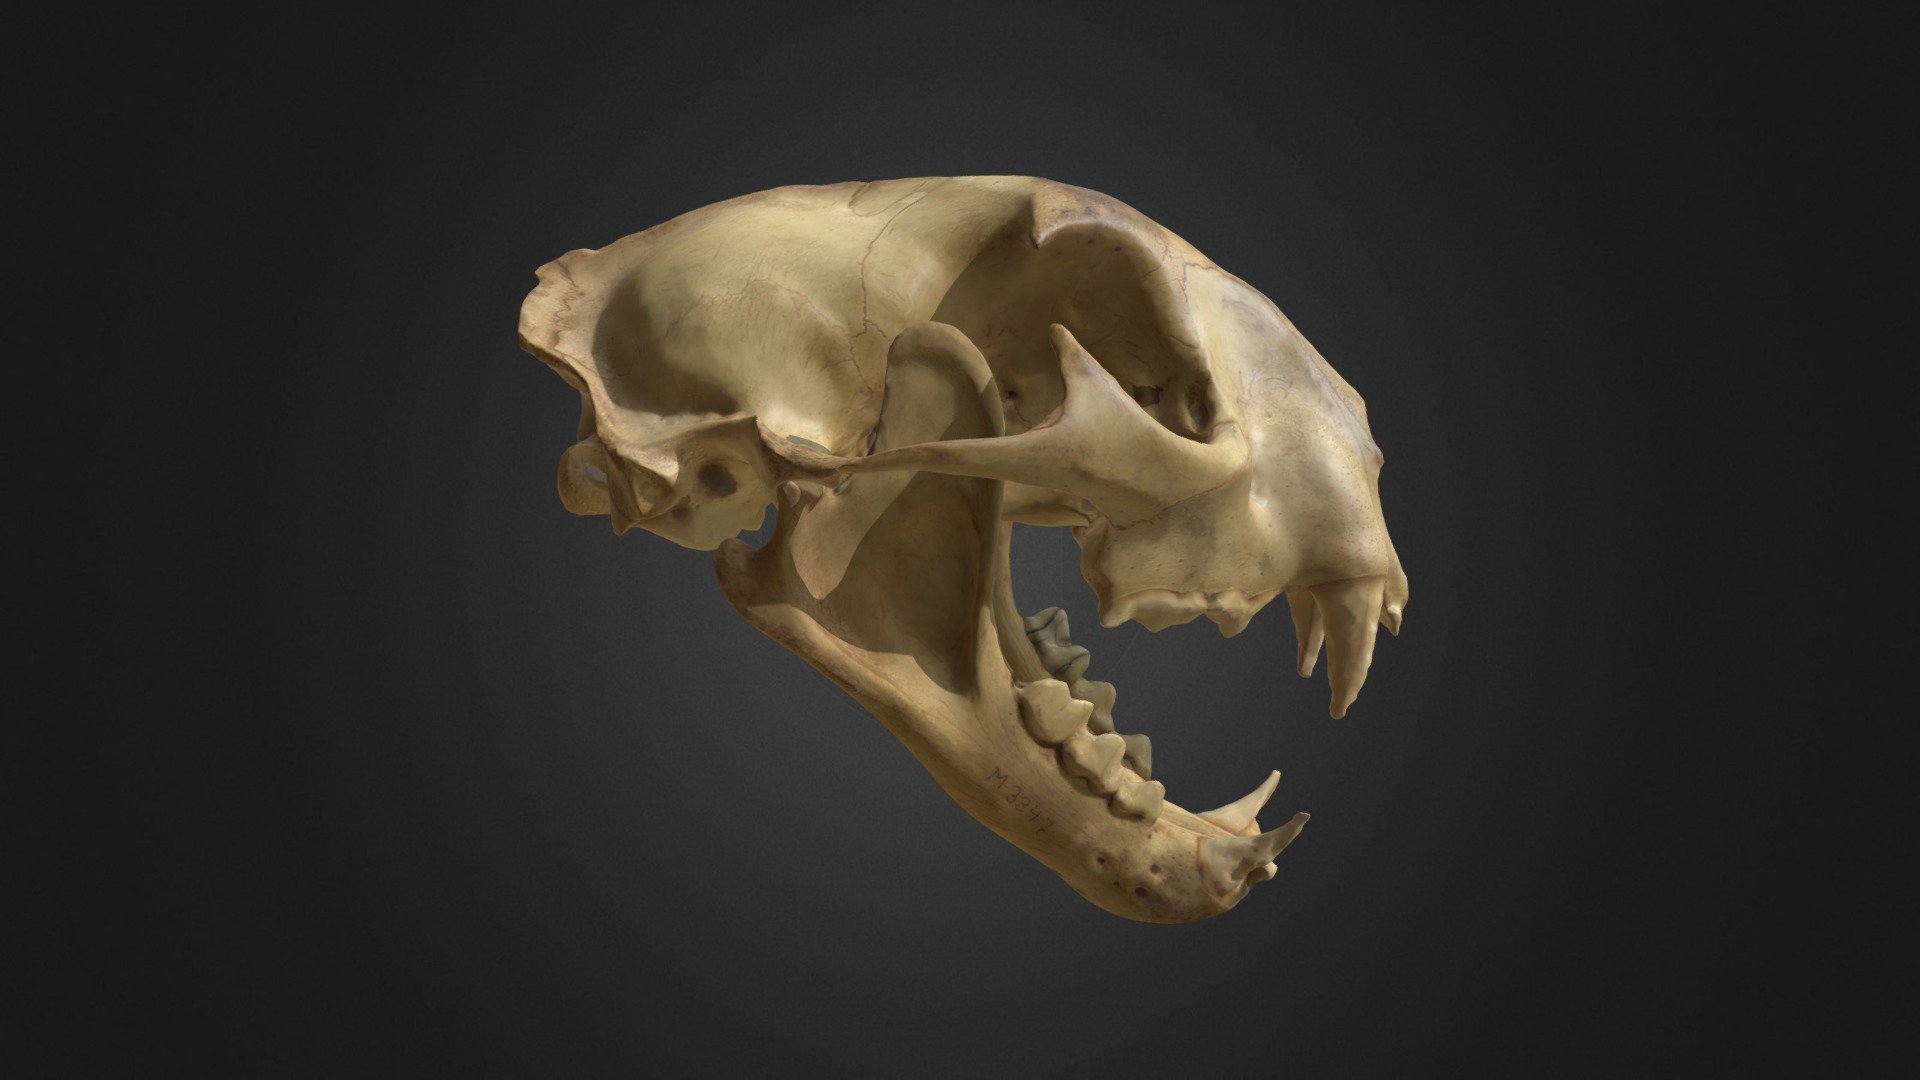 Cougar skull - Puma concolor - 3D model by AJL 3d model